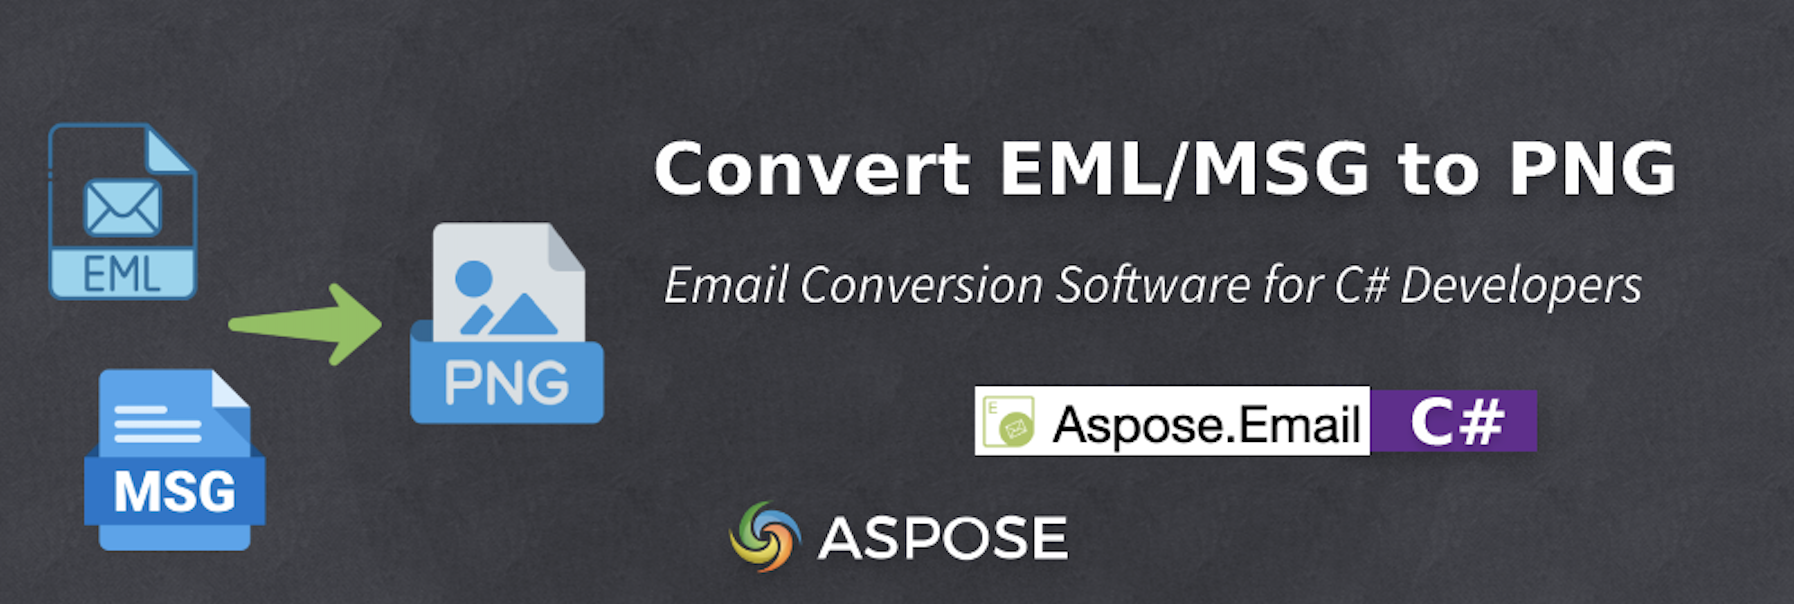 Phần mềm chuyển đổi email dành cho nhà phát triển C# - EML sang PNG